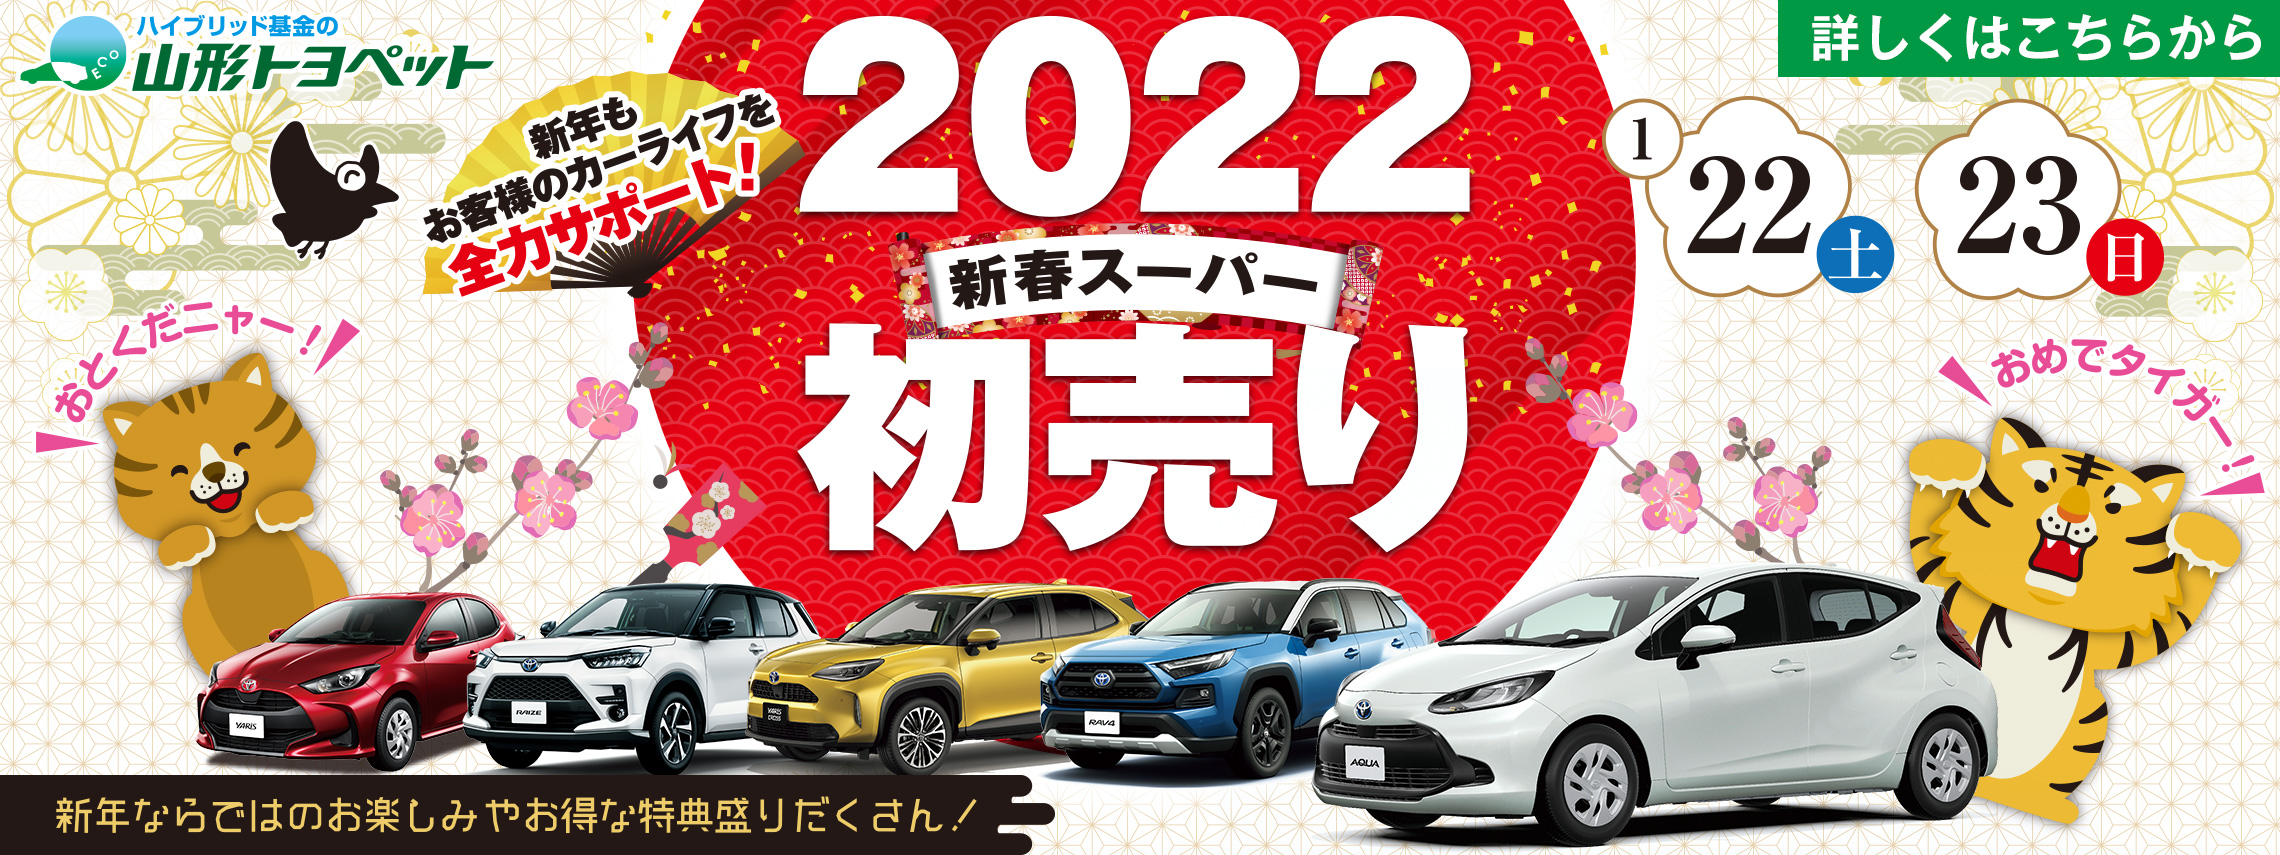 山形トヨペット 2022新春スーパー初売り 20220122-0123